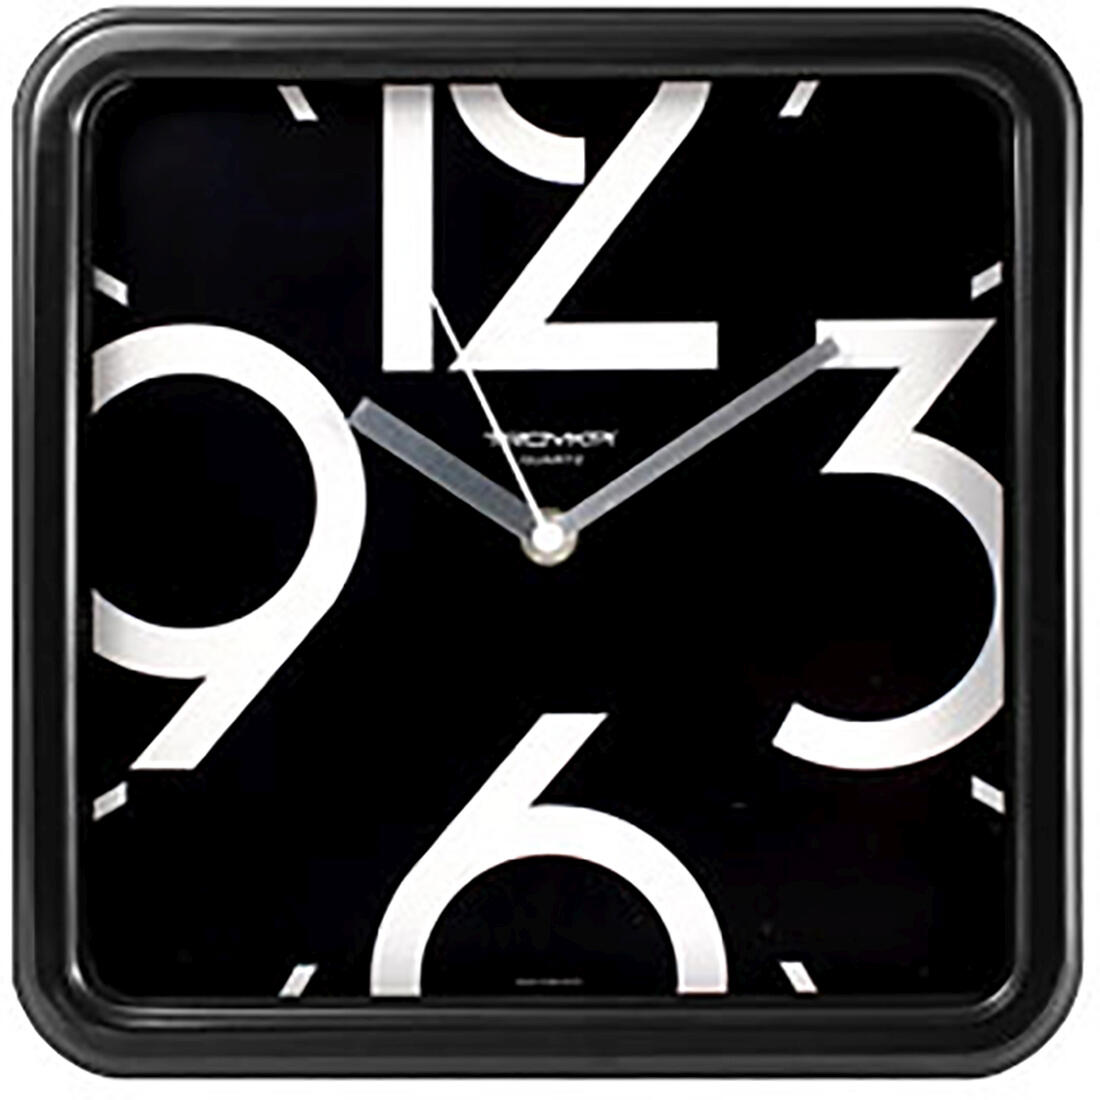 hodiny nástěnné 25x25cm PH ČER, minerální sklo (velký číselník) 0.62 Kg MAXMIX Sklad14 615012 59